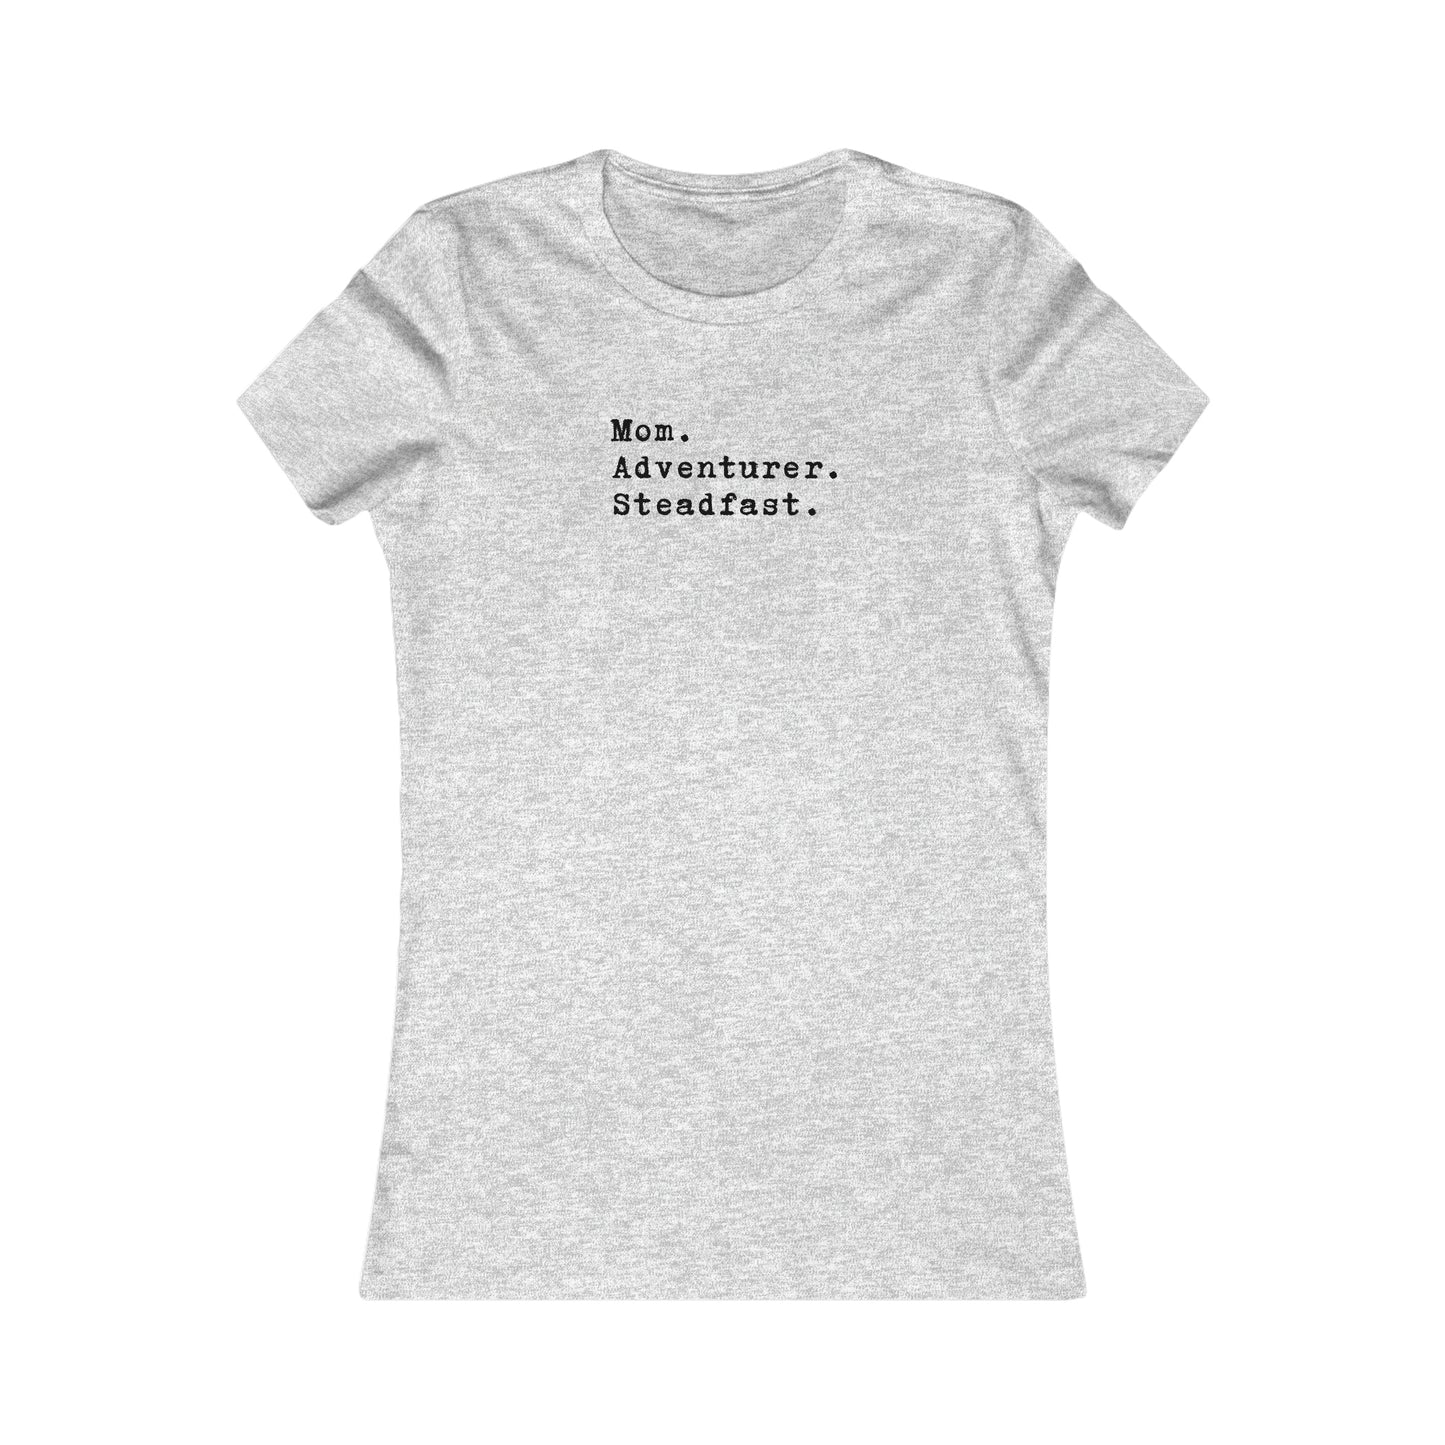 Mom.Adventurer.Steadfast. Women's T-Shirt